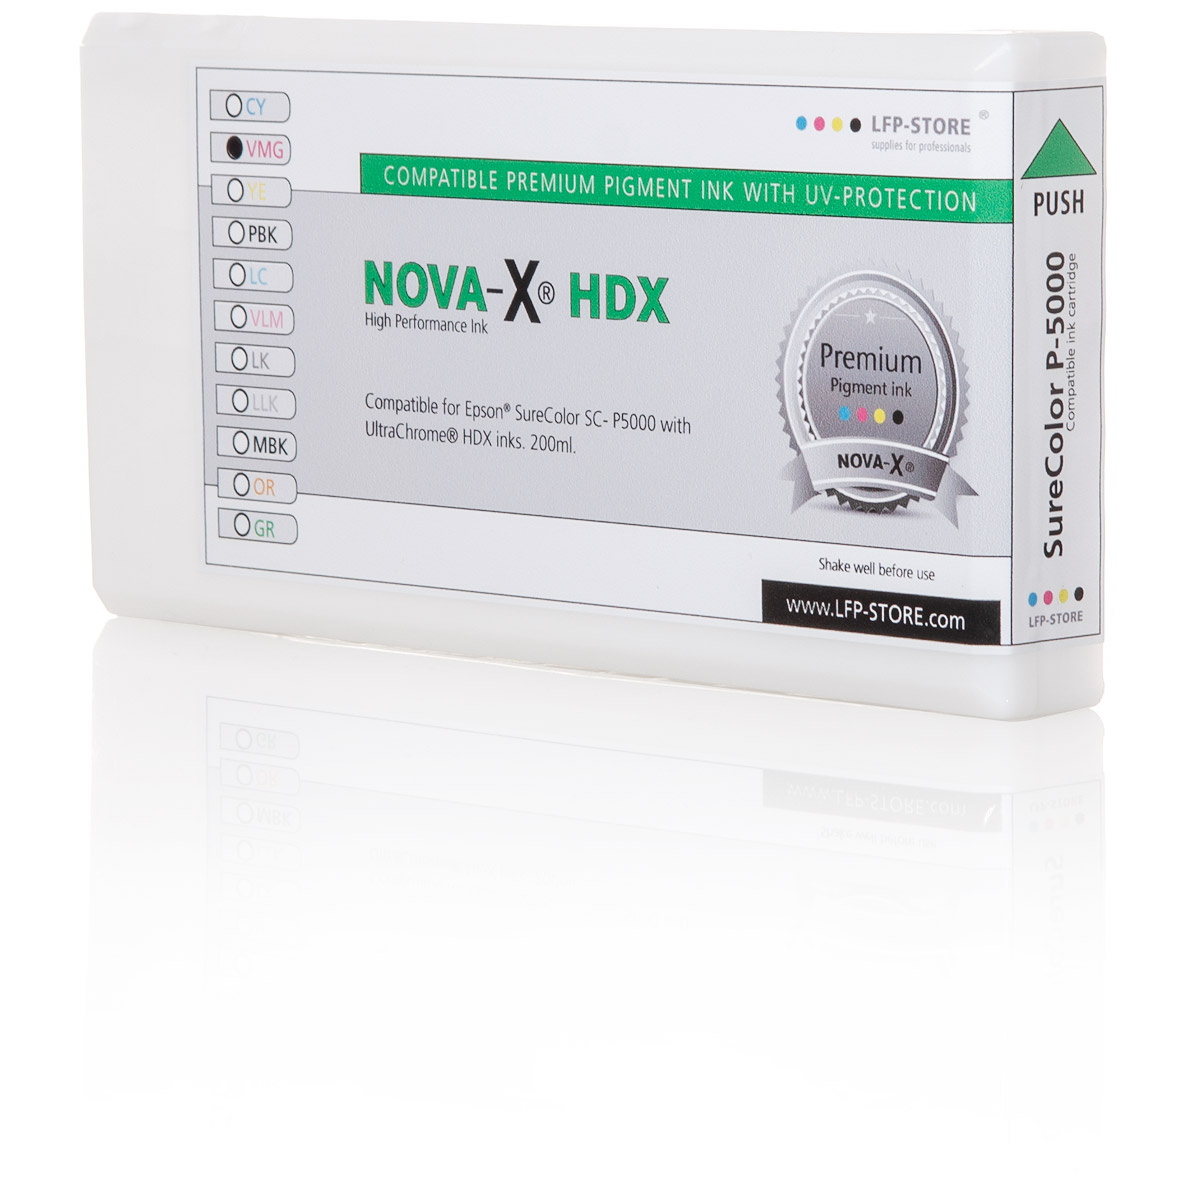 Tintenpatrone NOVA-X® HDX | kompatibel für Epson® SureColor SC P5000 | 200ml